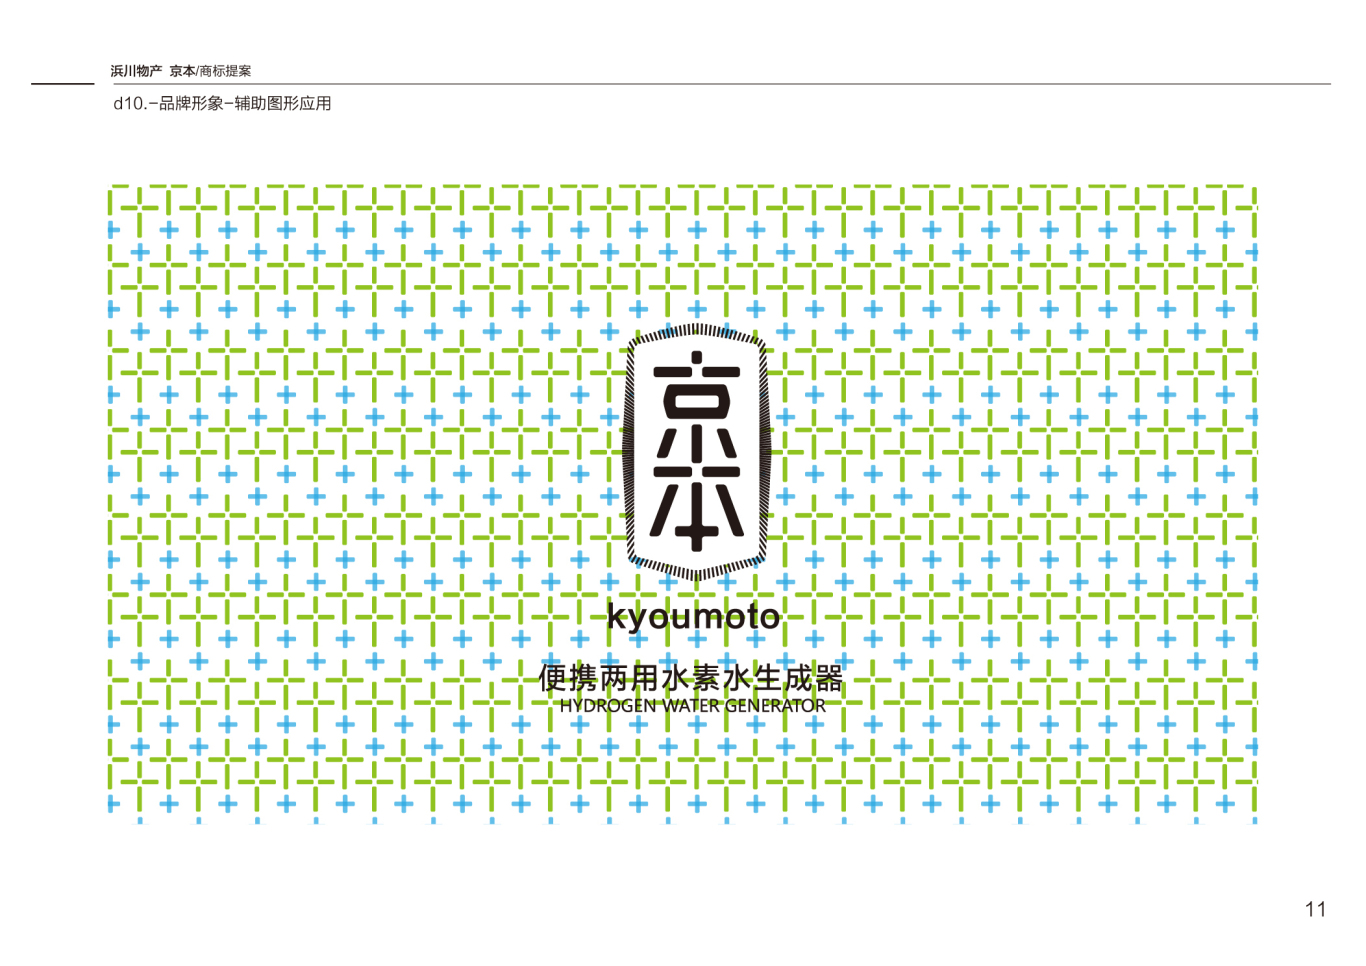 京本品牌便携式水素水生成器商标设计图9